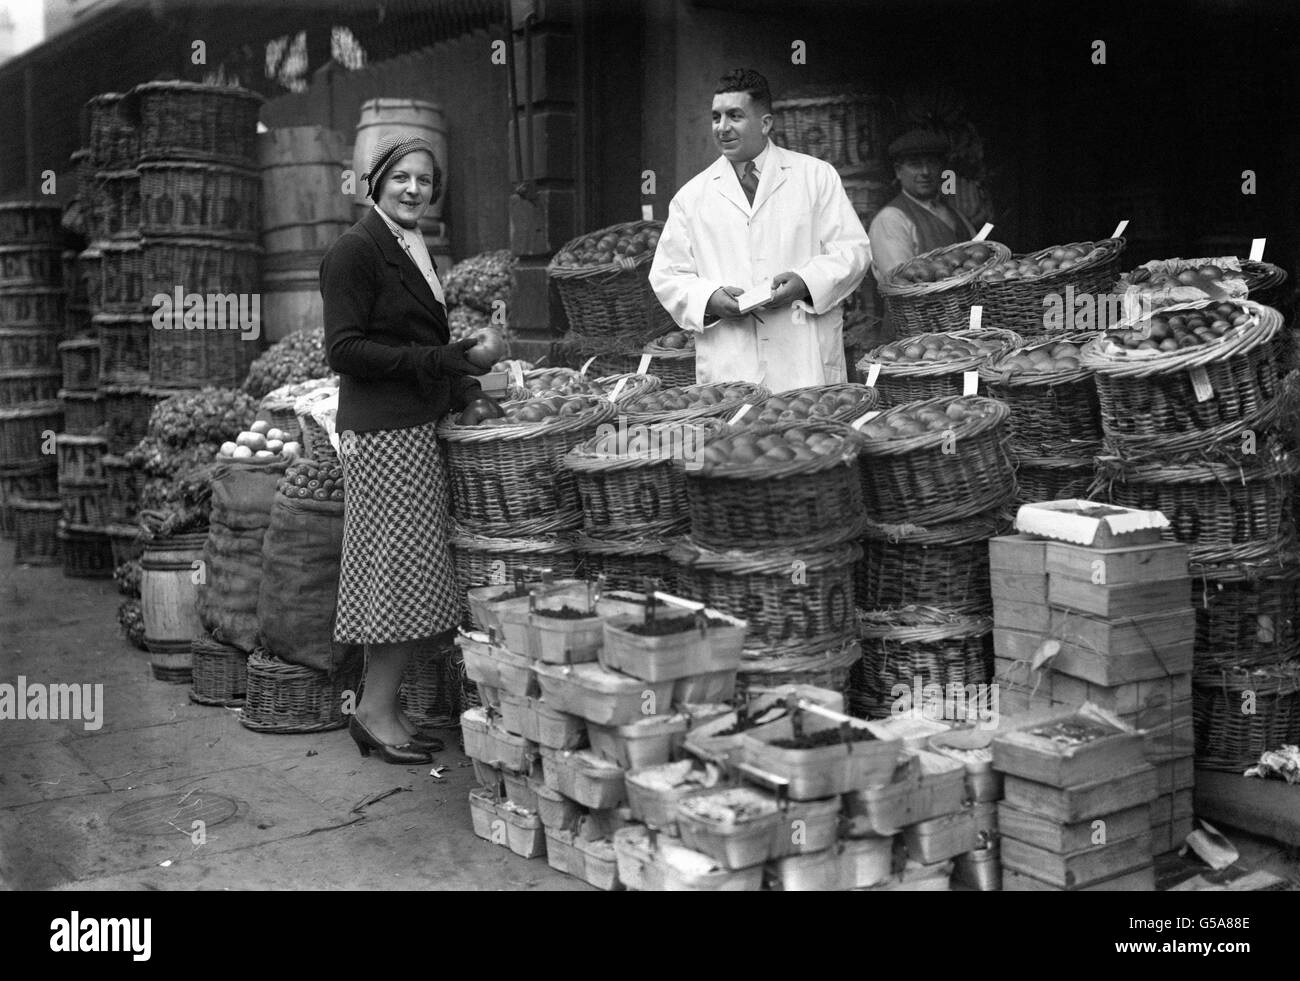 Célèbre joueur de tennis Miss Betty Nuthall, faisant des achats sur le marché aux fruits et légumes de Covent Garden dans le centre de Londres. Banque D'Images